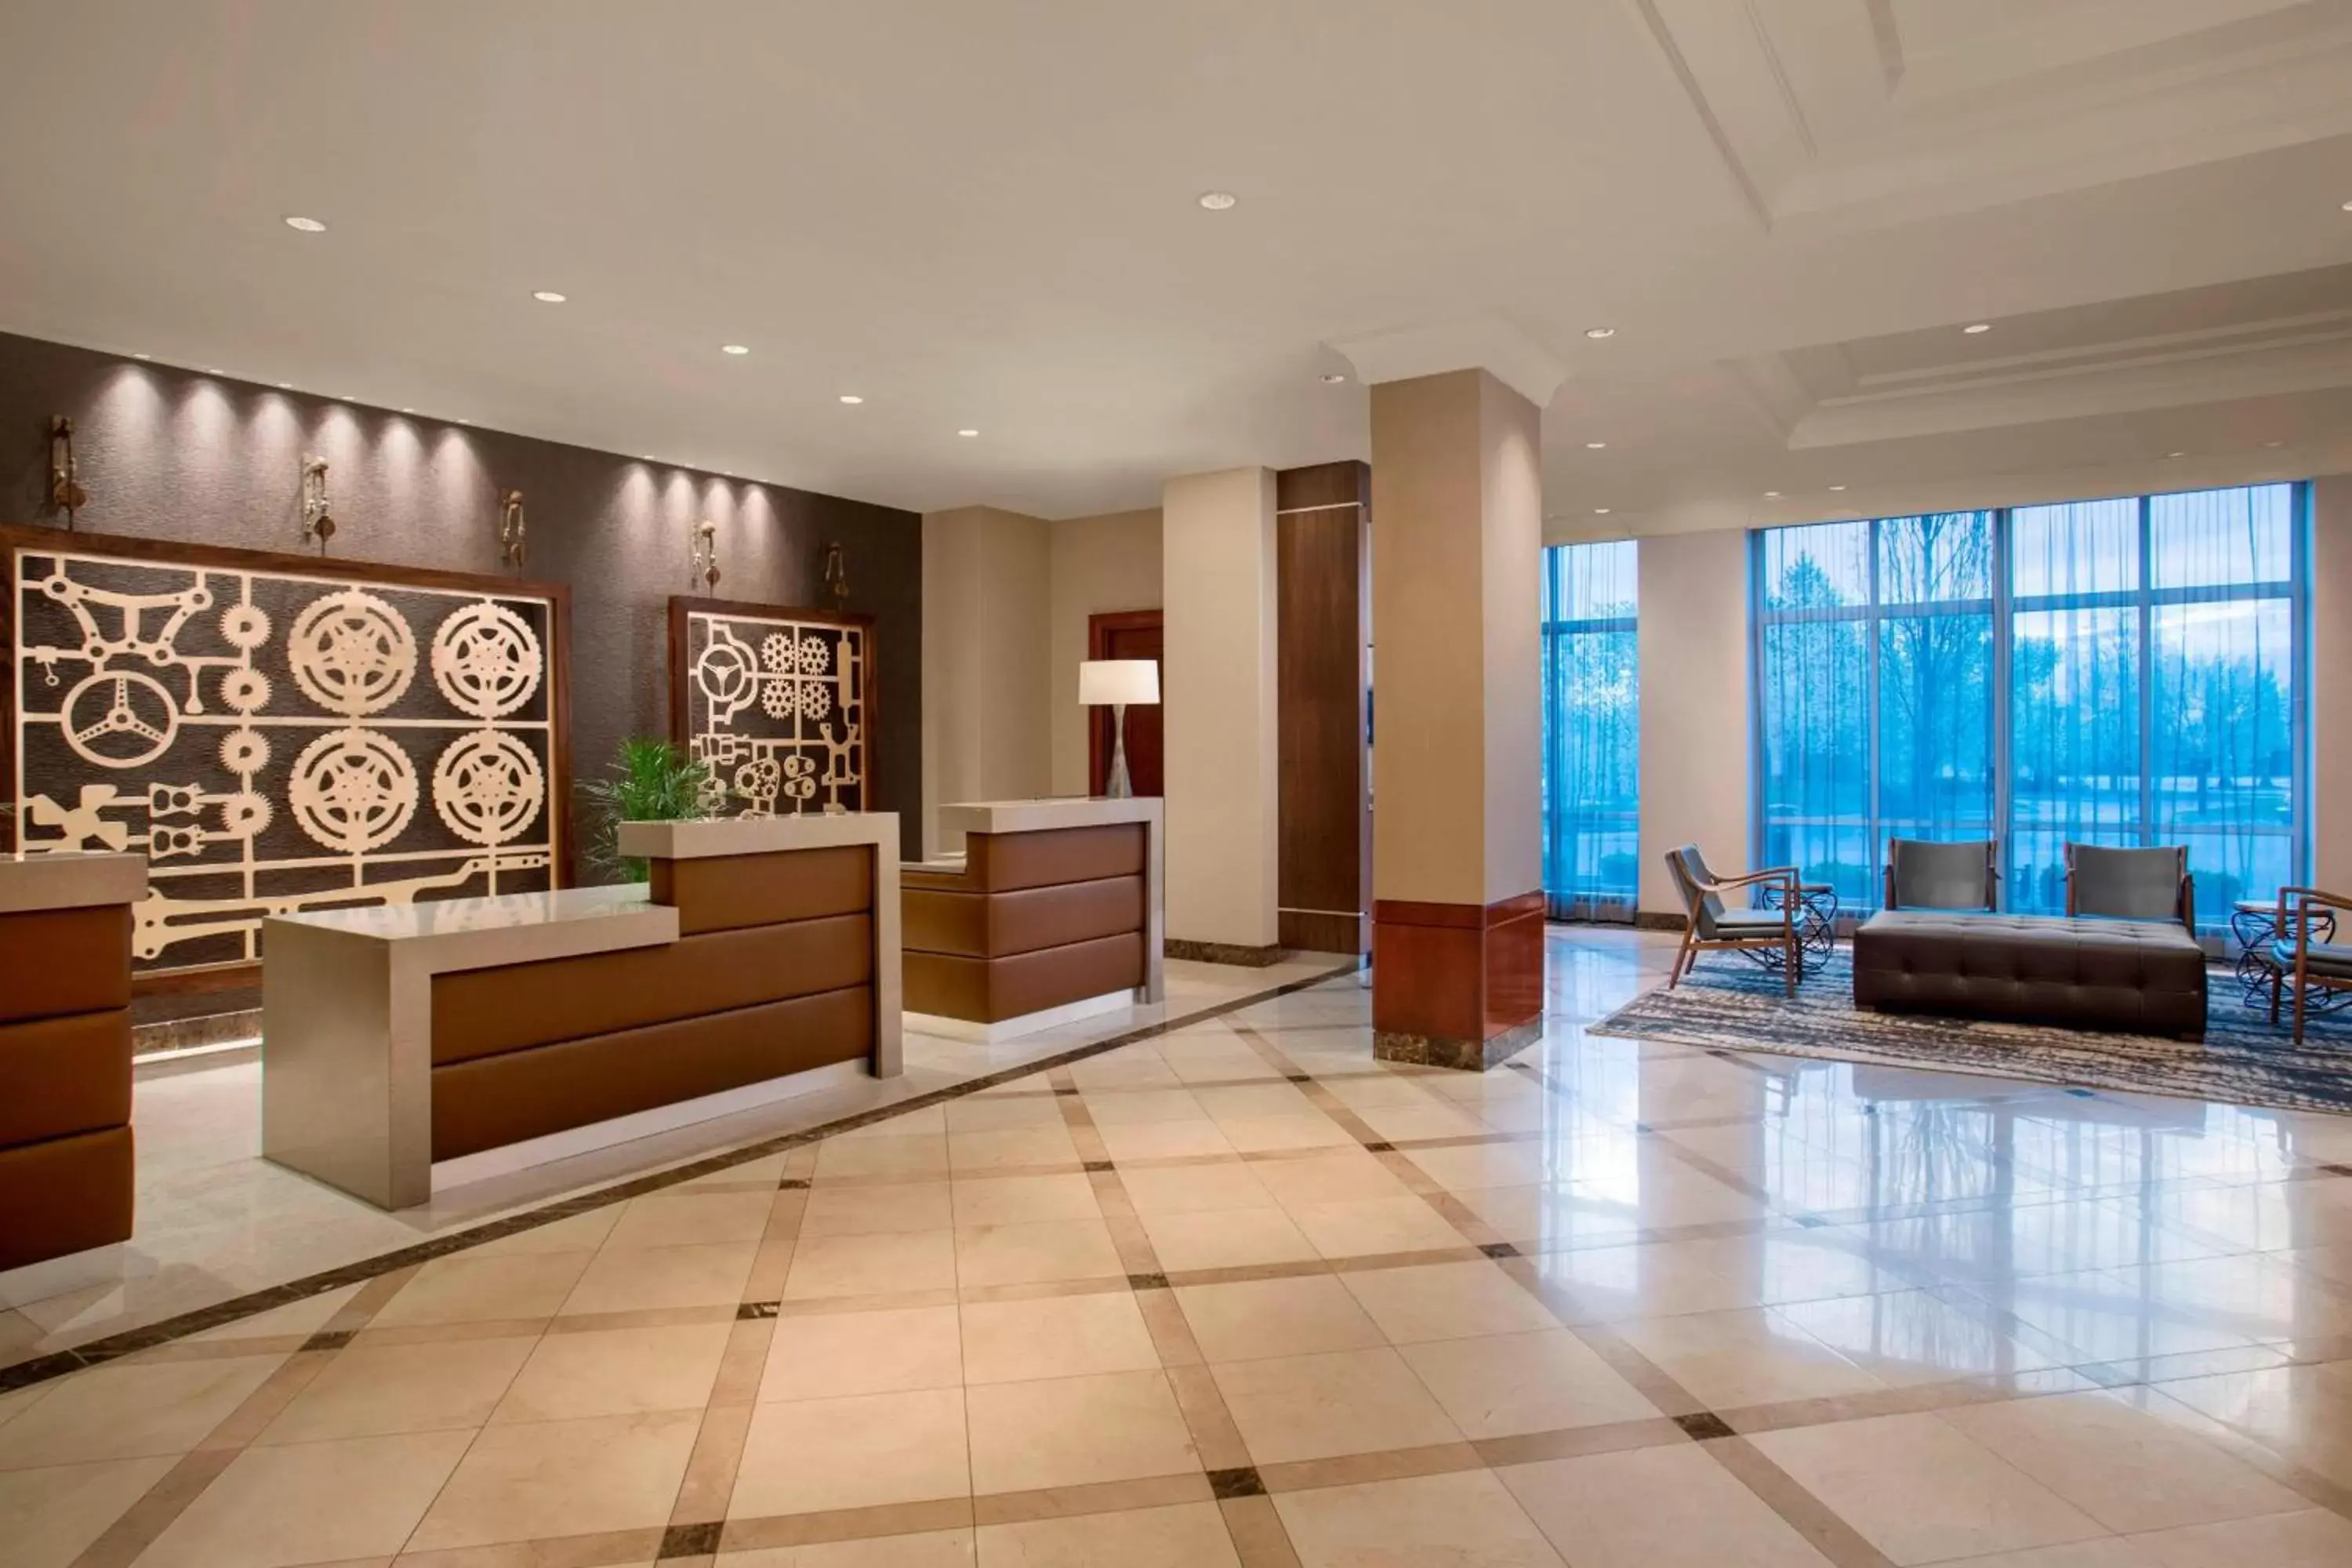 Lobby or reception, Lobby/Reception in Auburn Hills Marriott Pontiac